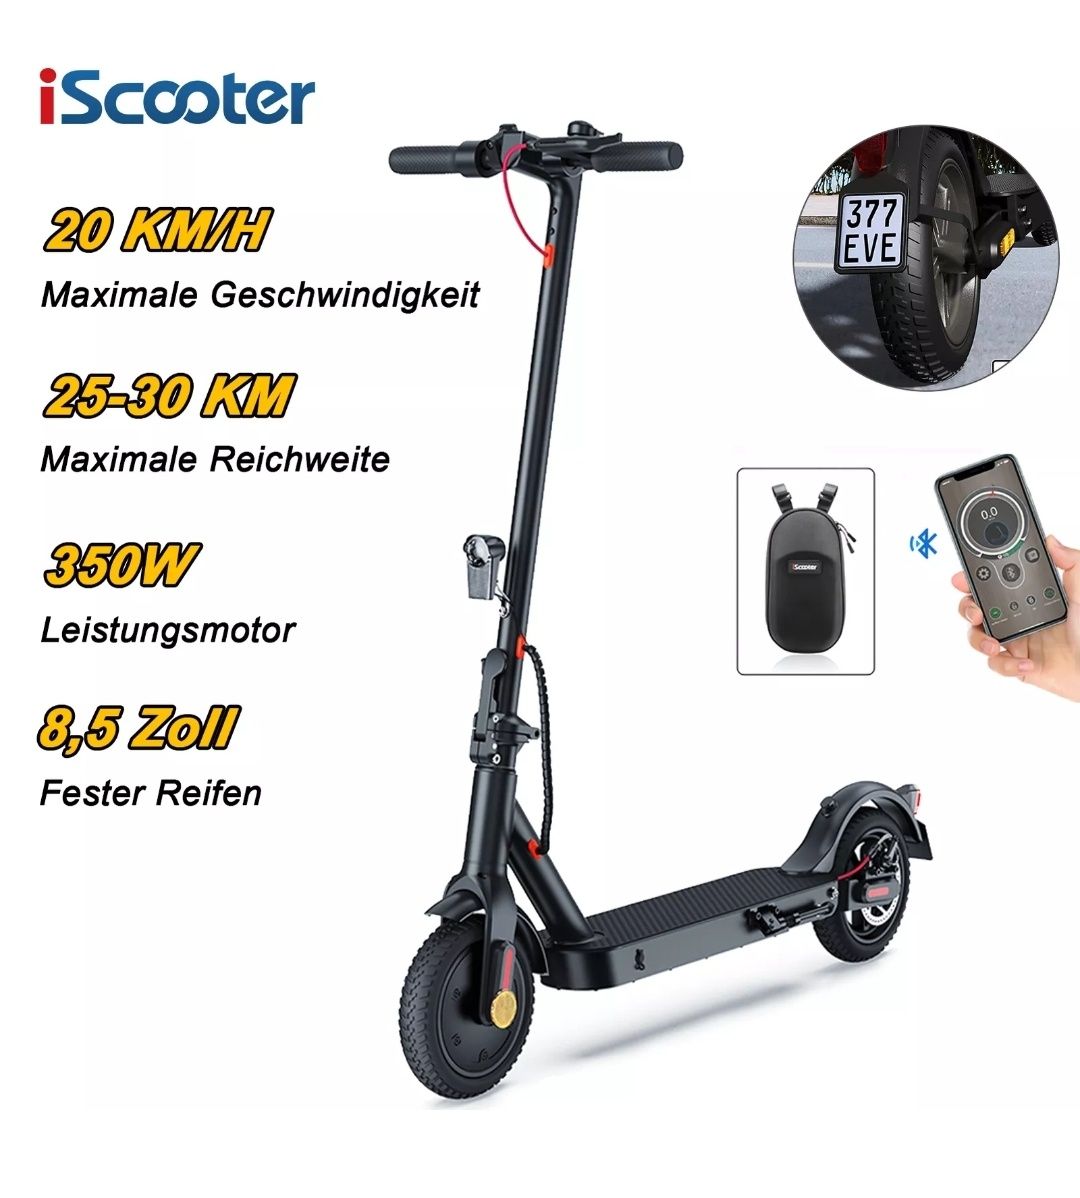 Trotineta electrica iScooter 500w (in cutie Noua)